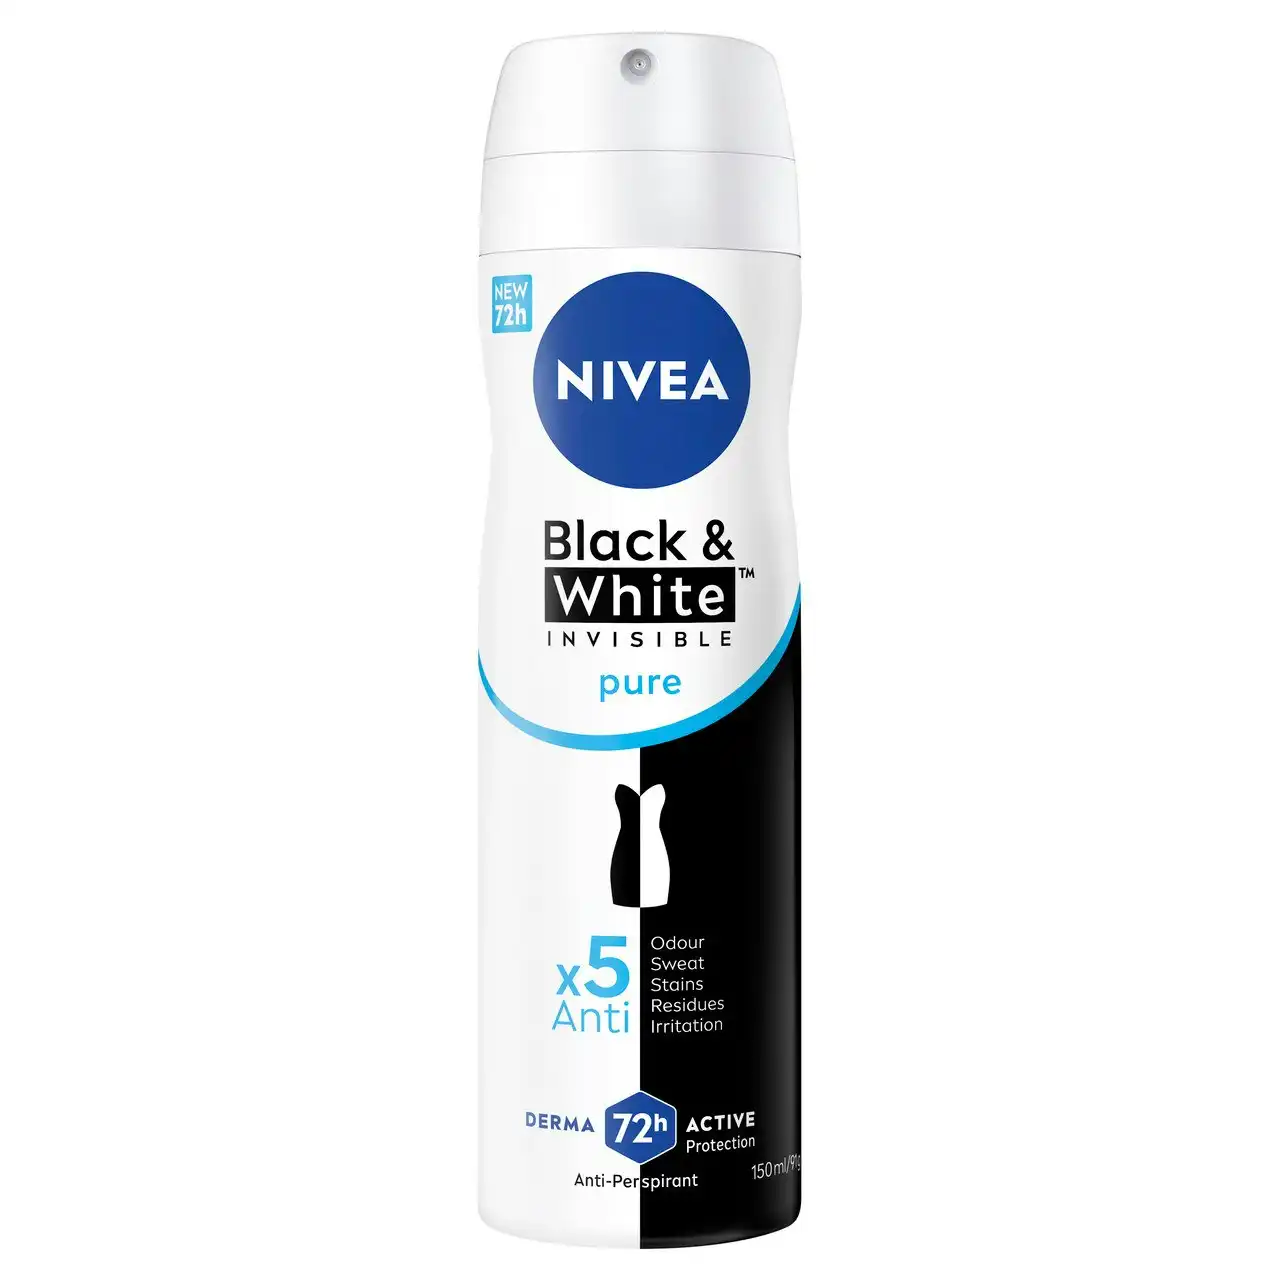 Nivea Invisible Black & White Pure Aerosol 150ml